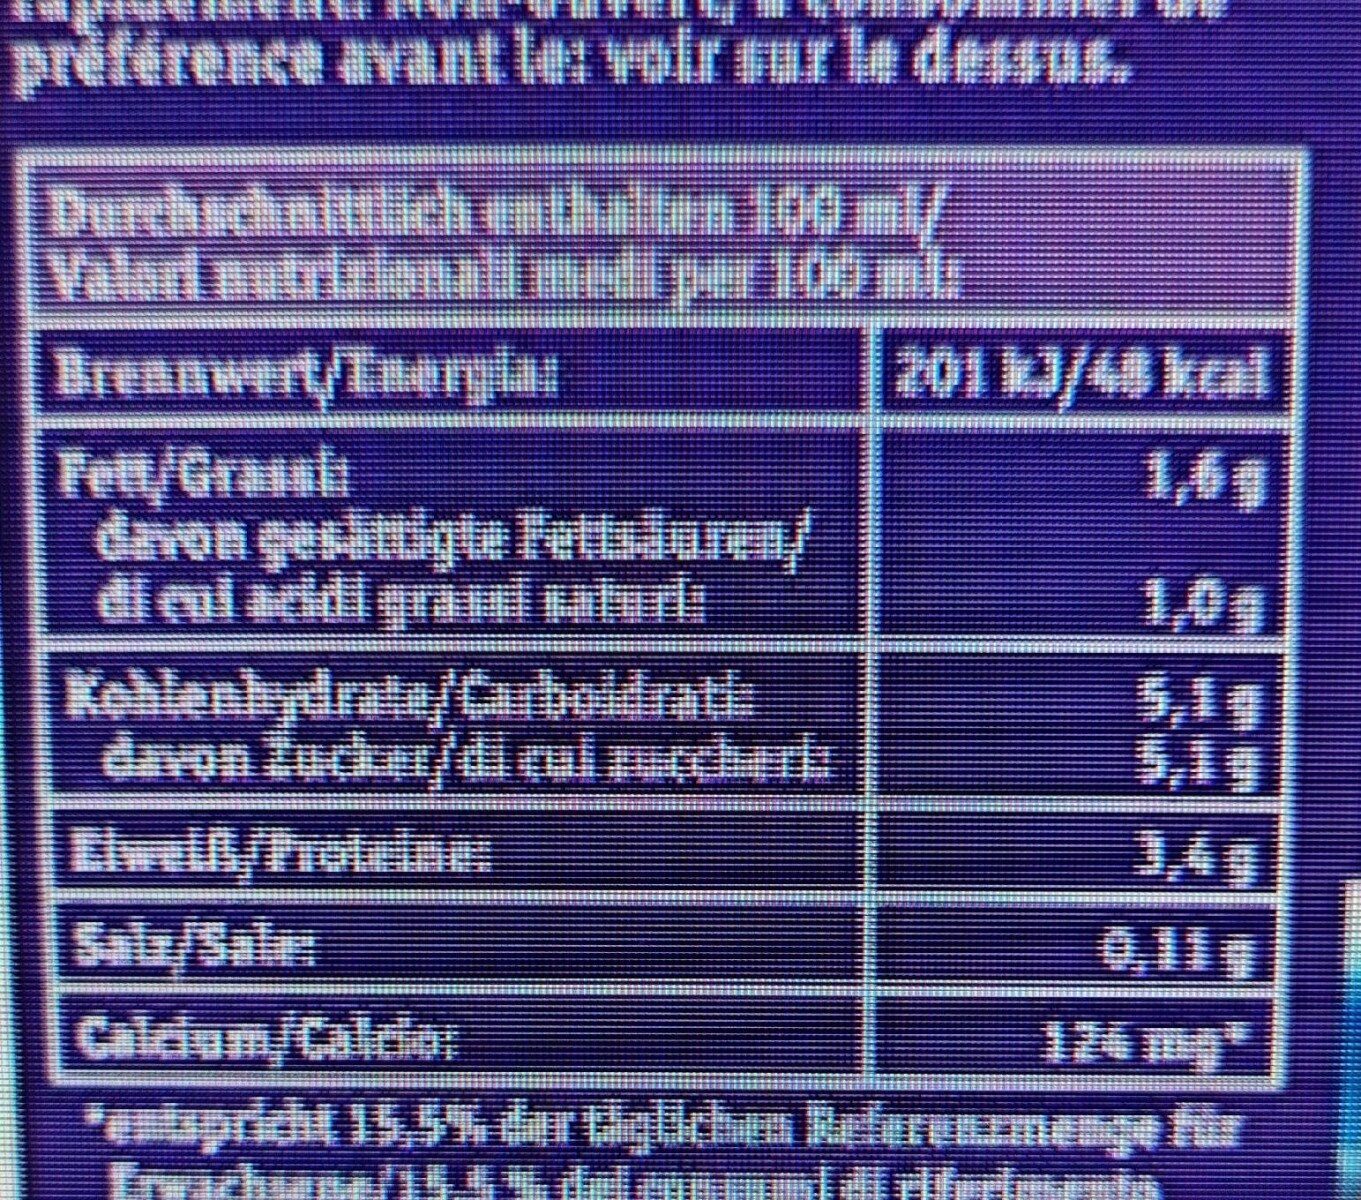 Haltbare Bio-Alpenmilch 1,5 % - Nutrition facts - de